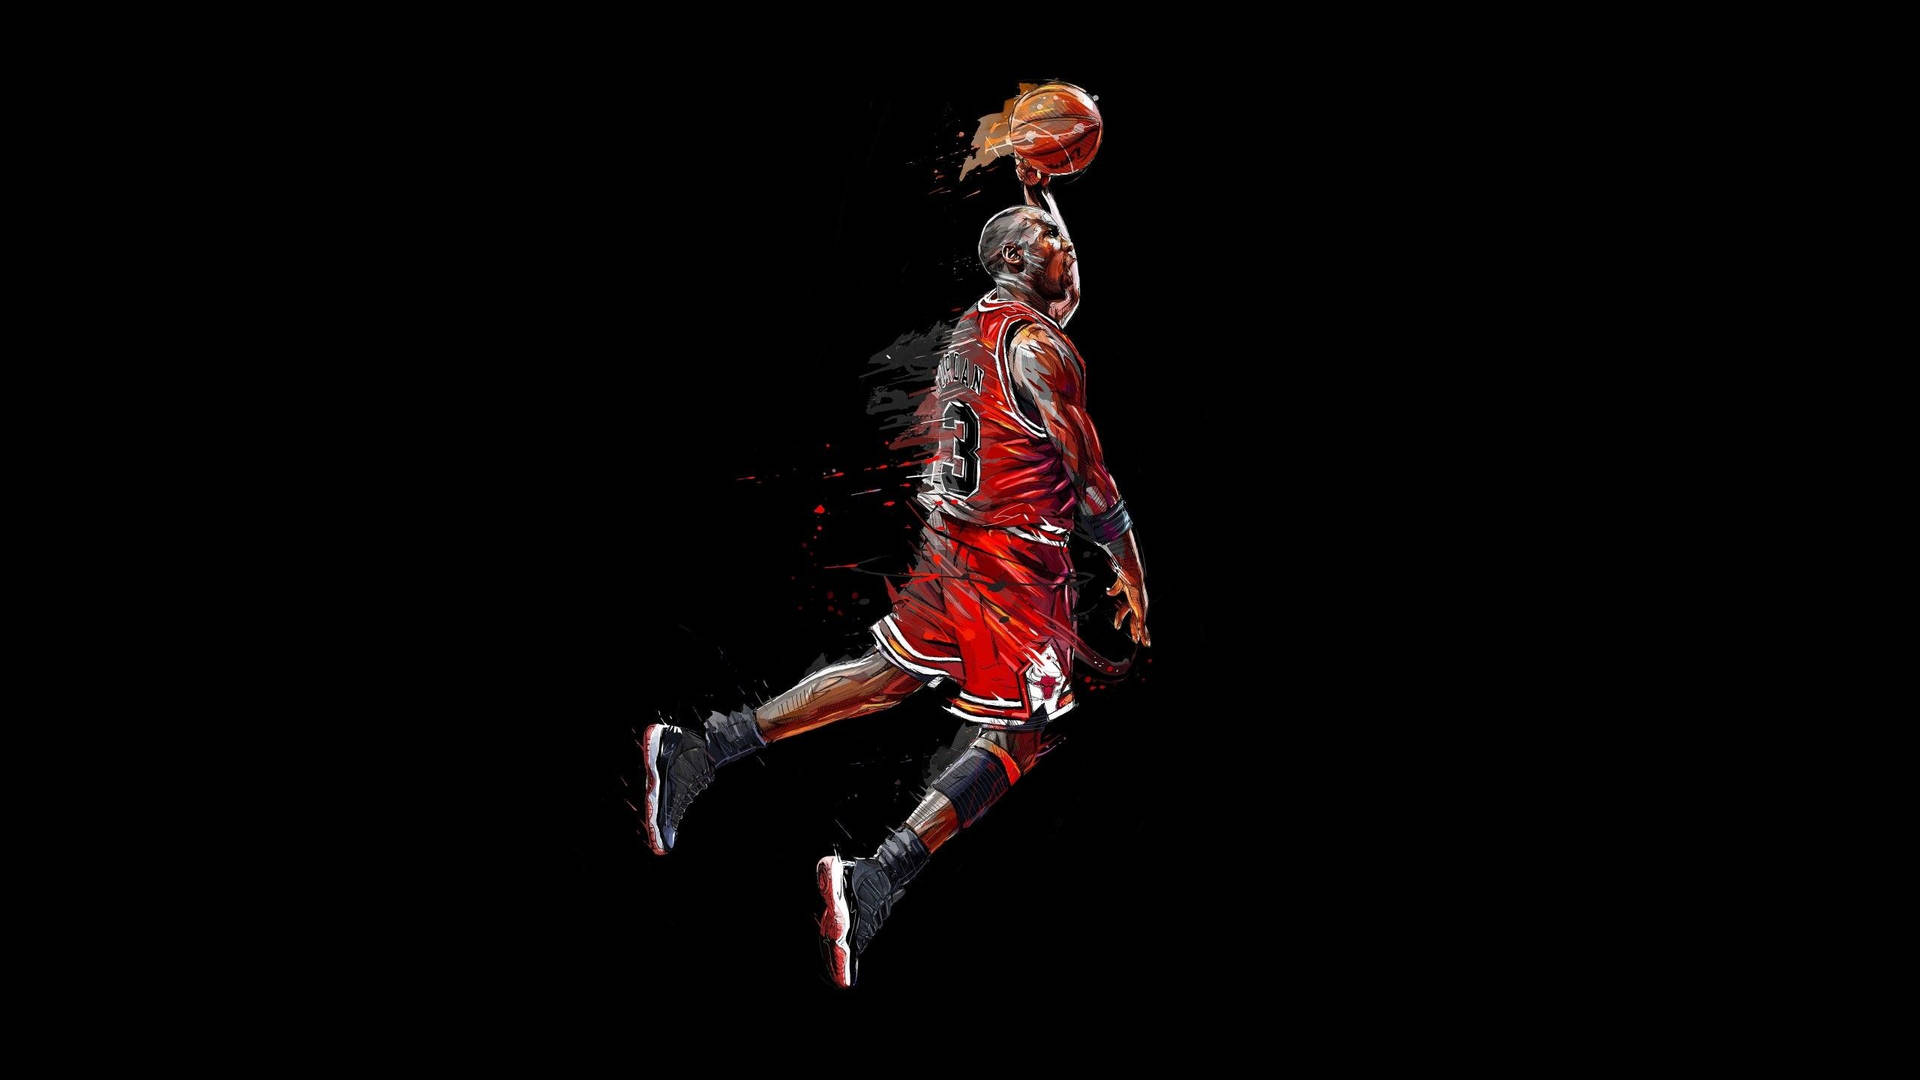 Michael Jordan Basketball Artwork